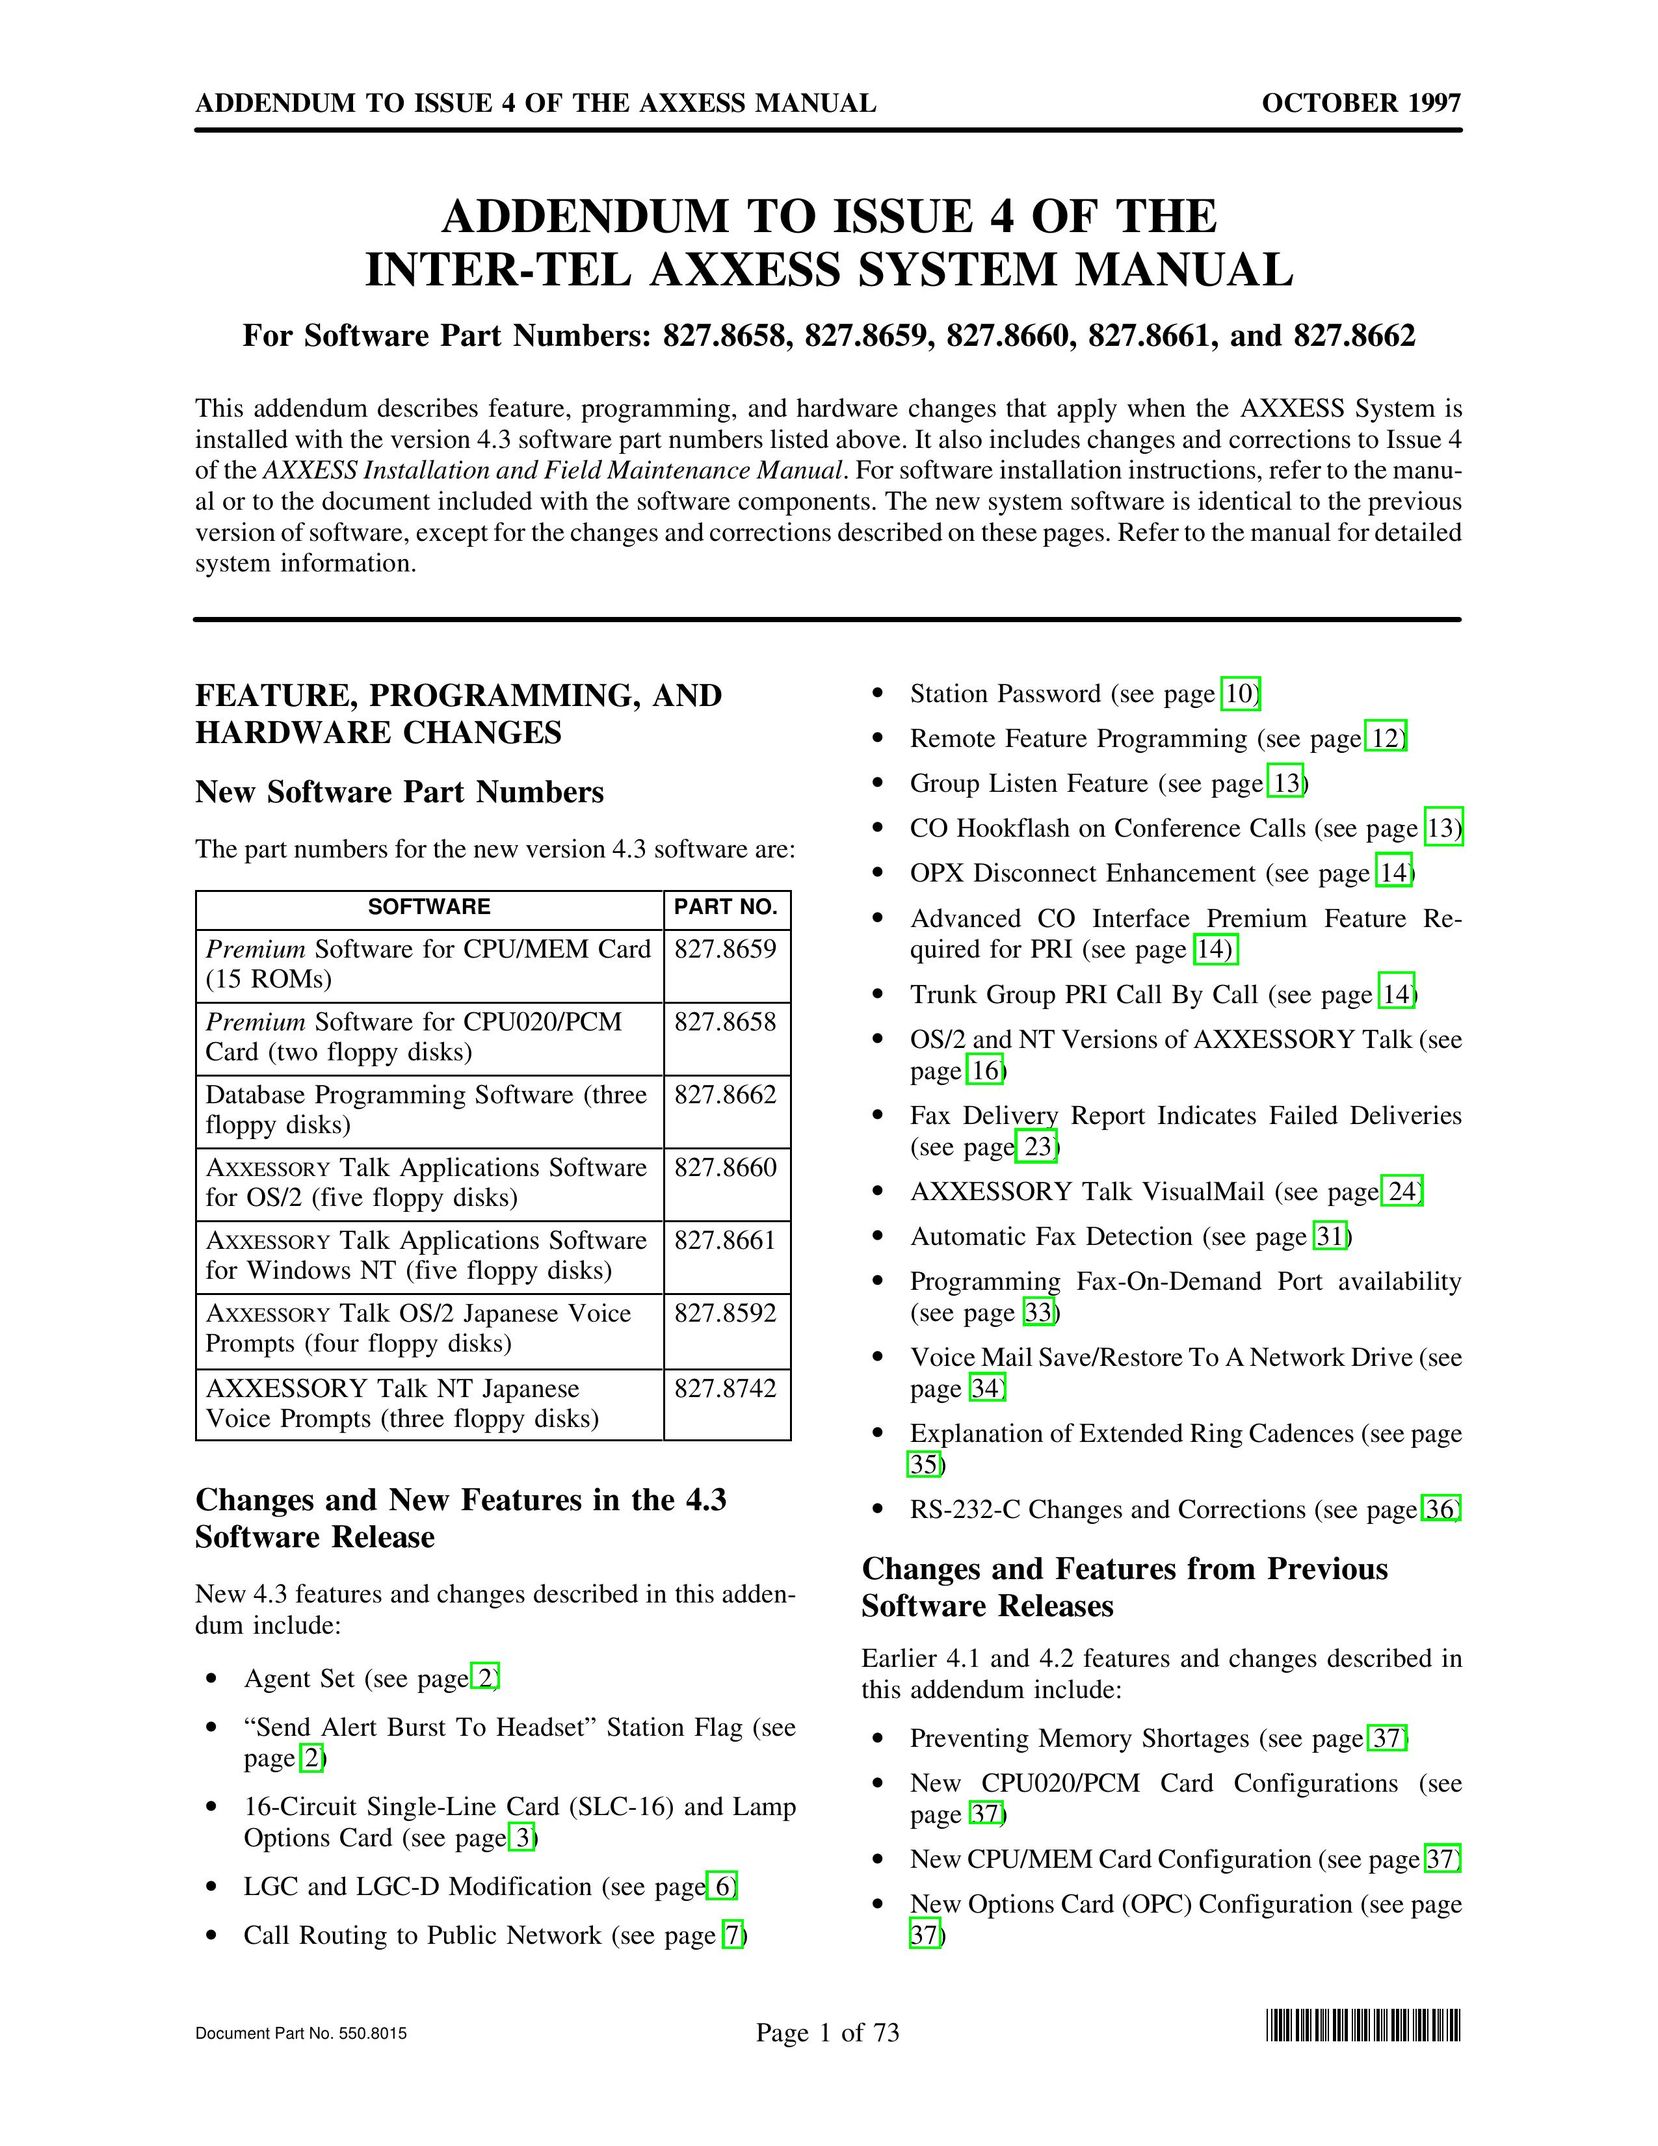 Inter-Tel 827.8662 Telephone User Manual